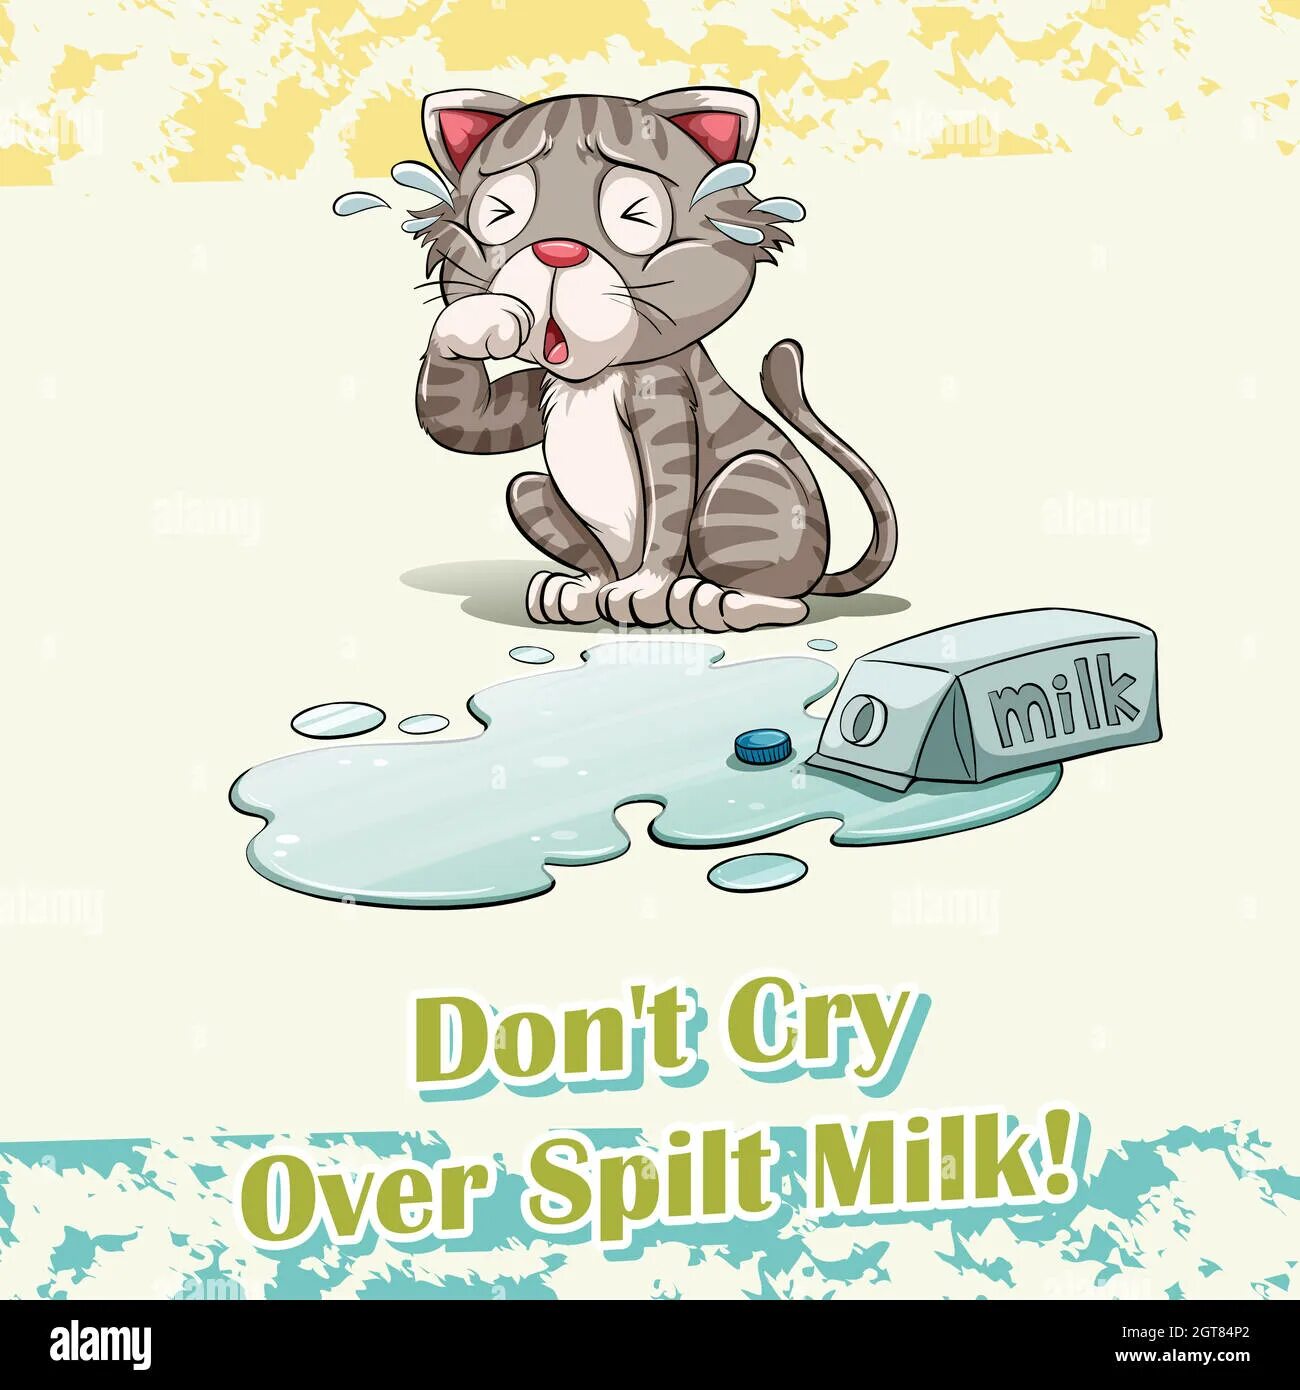 Crying over spilt Milk идиома. Over spilt Milk идиома. Spilled Milk. Don't Cry over spilt Milk. Crying over spilt milk идиома перевод